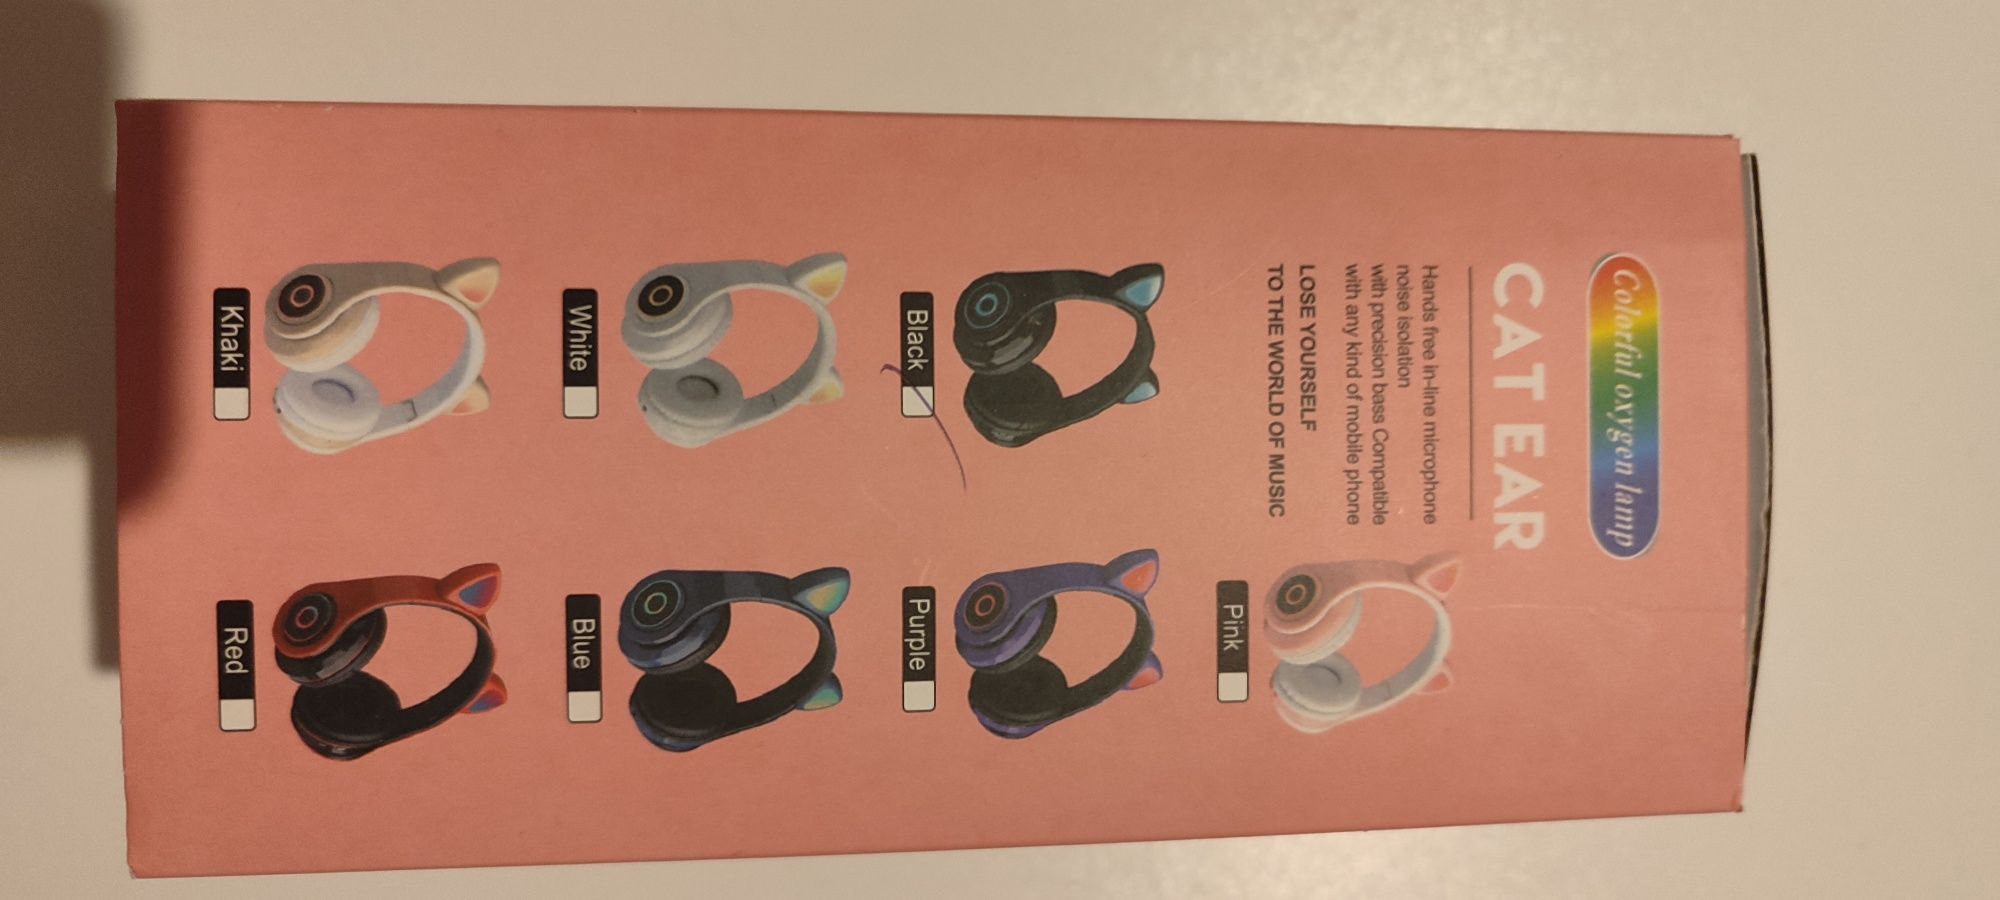 Bezprzewodowe nauszne słuchawki kocie bluetooth czarne led